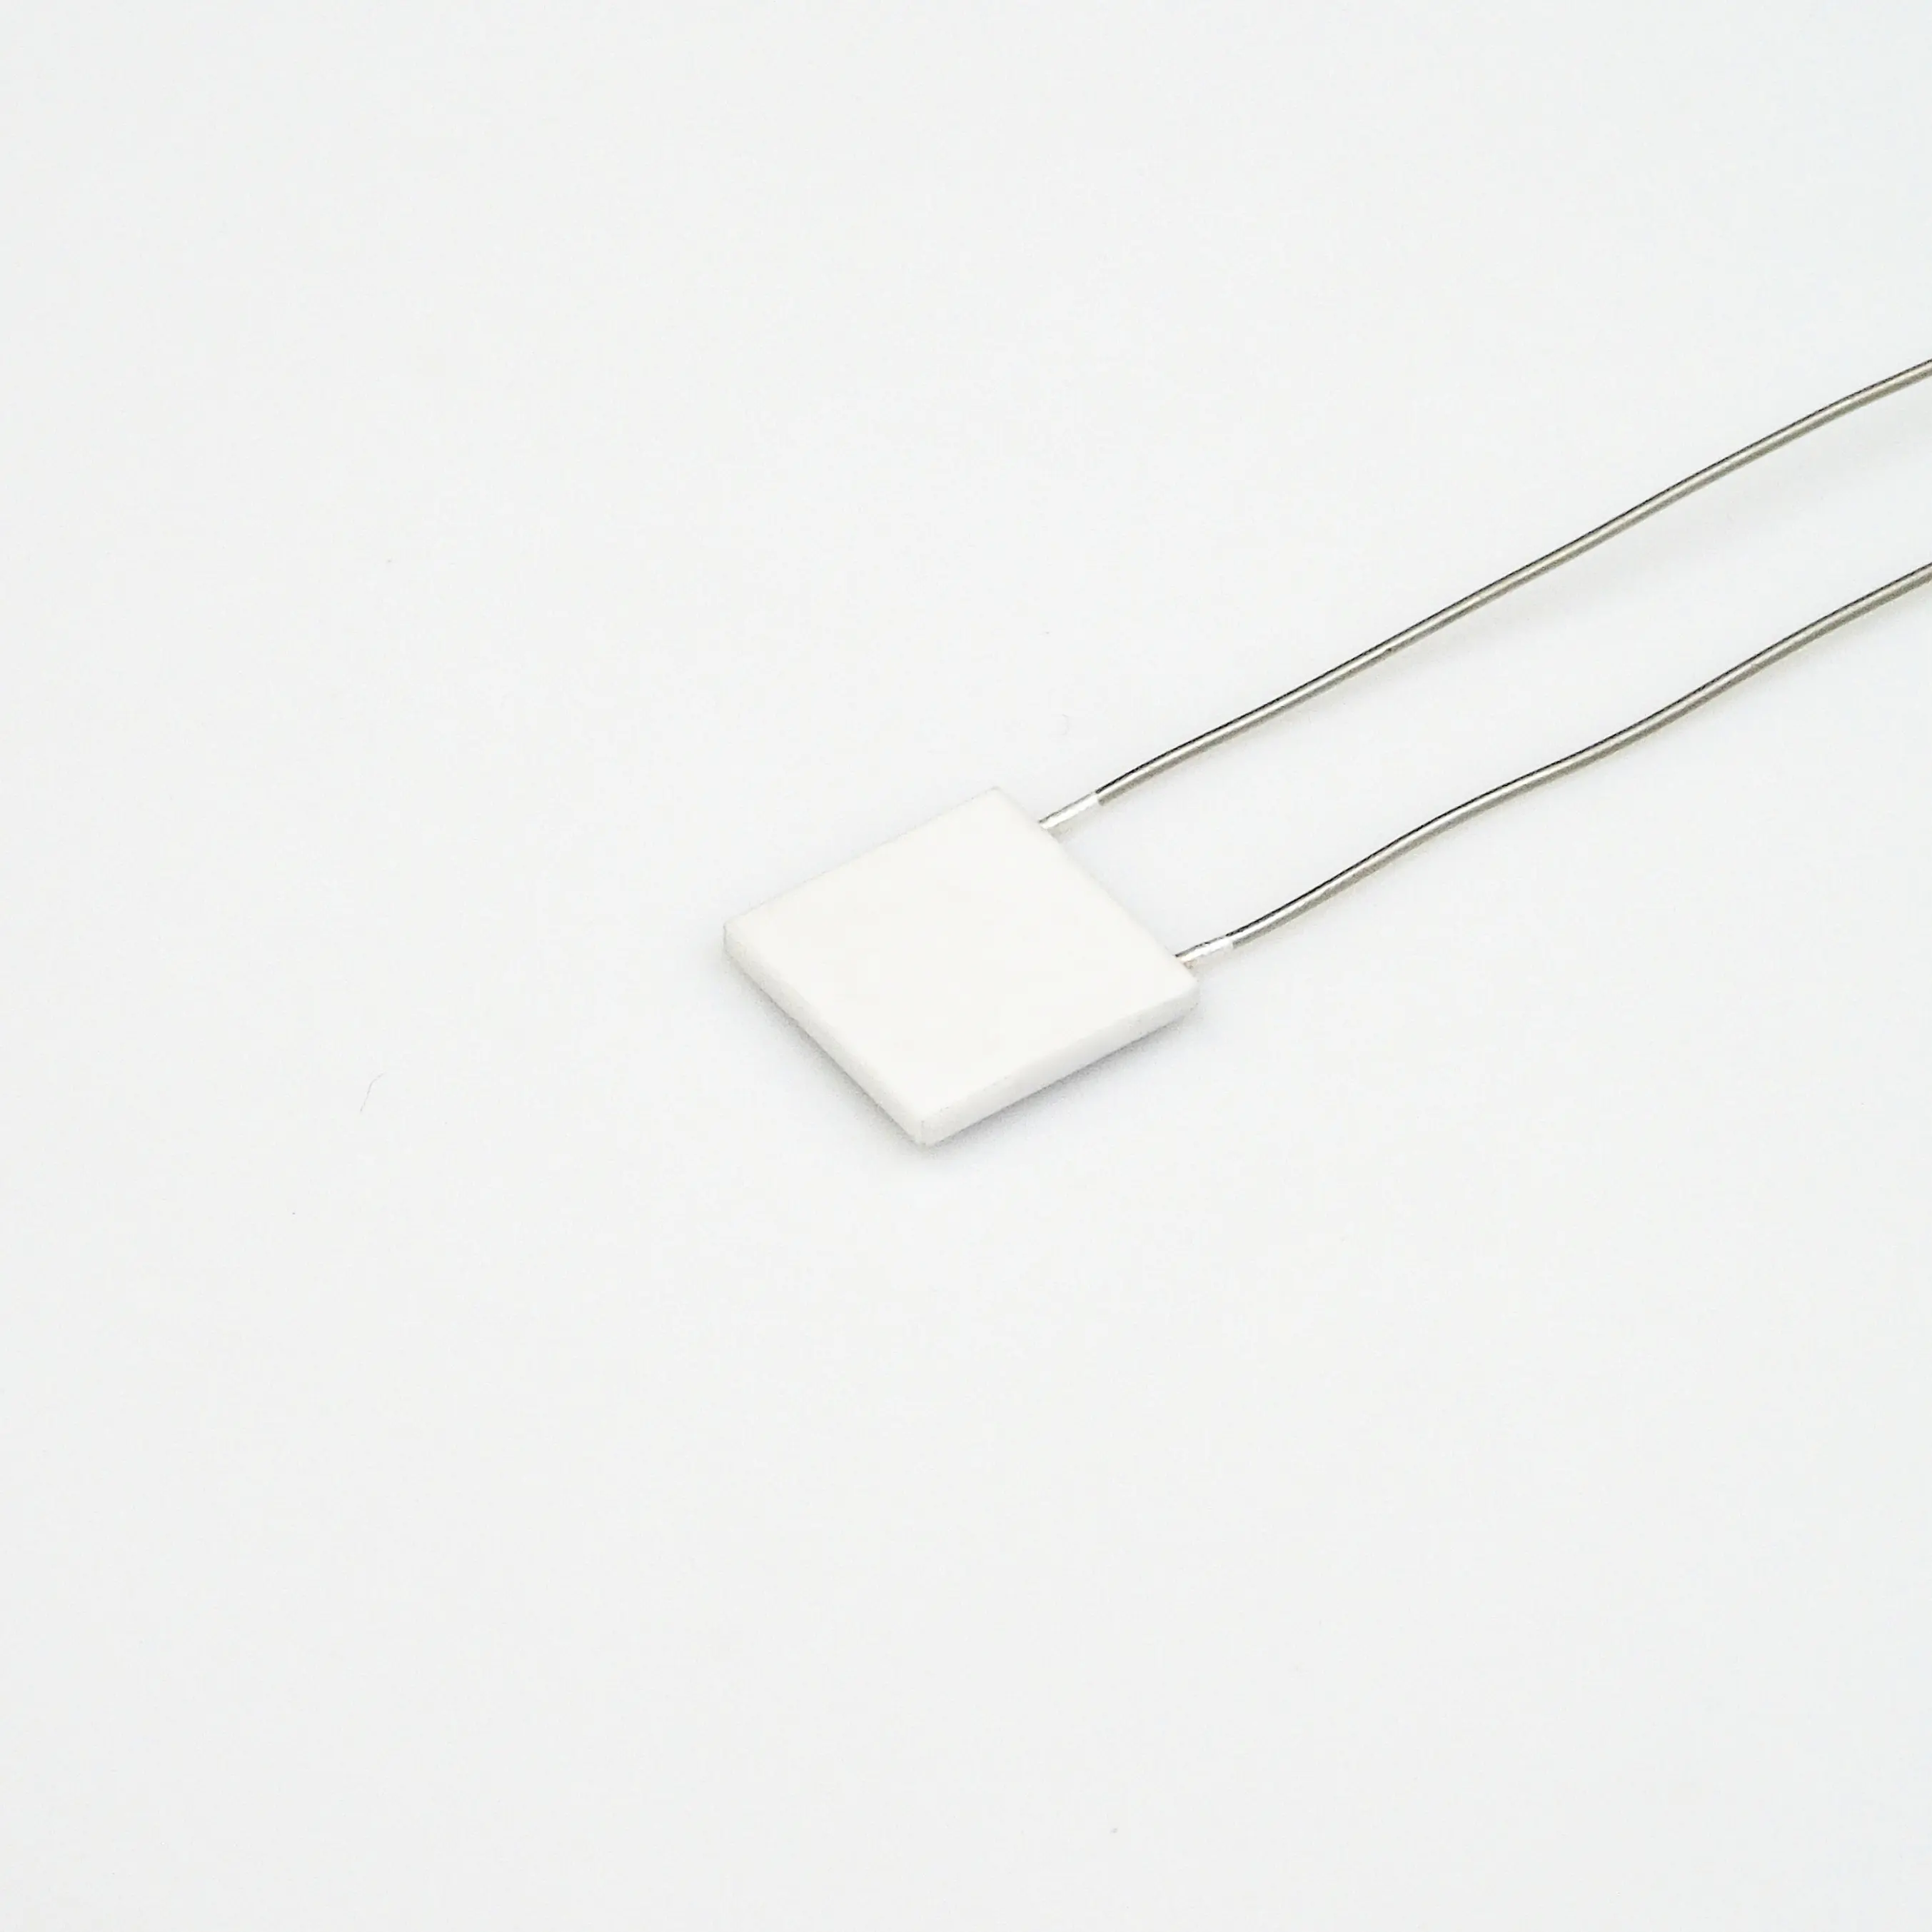 Mch vuông nhỏ yếu tố làm nóng gốm cho 12V điện áp thấp USB 5V ứng dụng có thể được tùy chỉnh